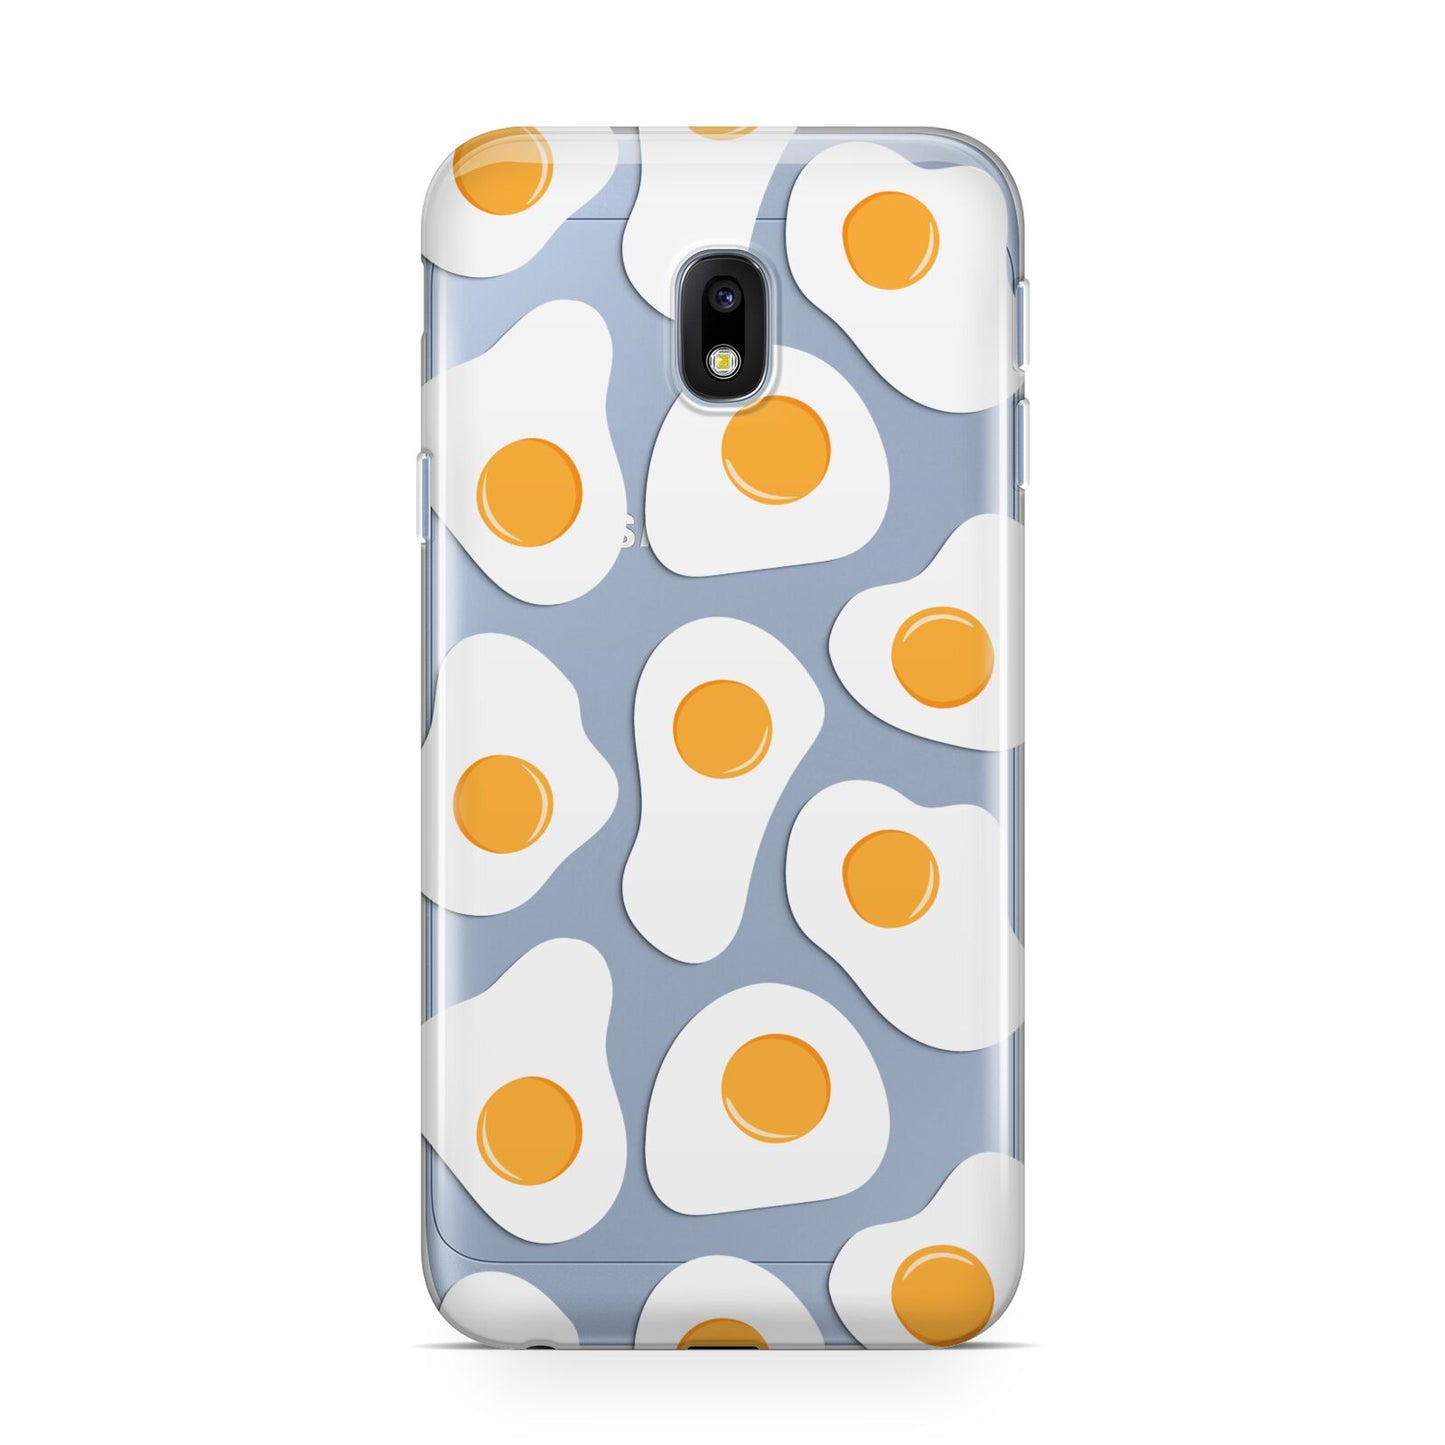 Fried Egg Samsung Galaxy J3 2017 Case